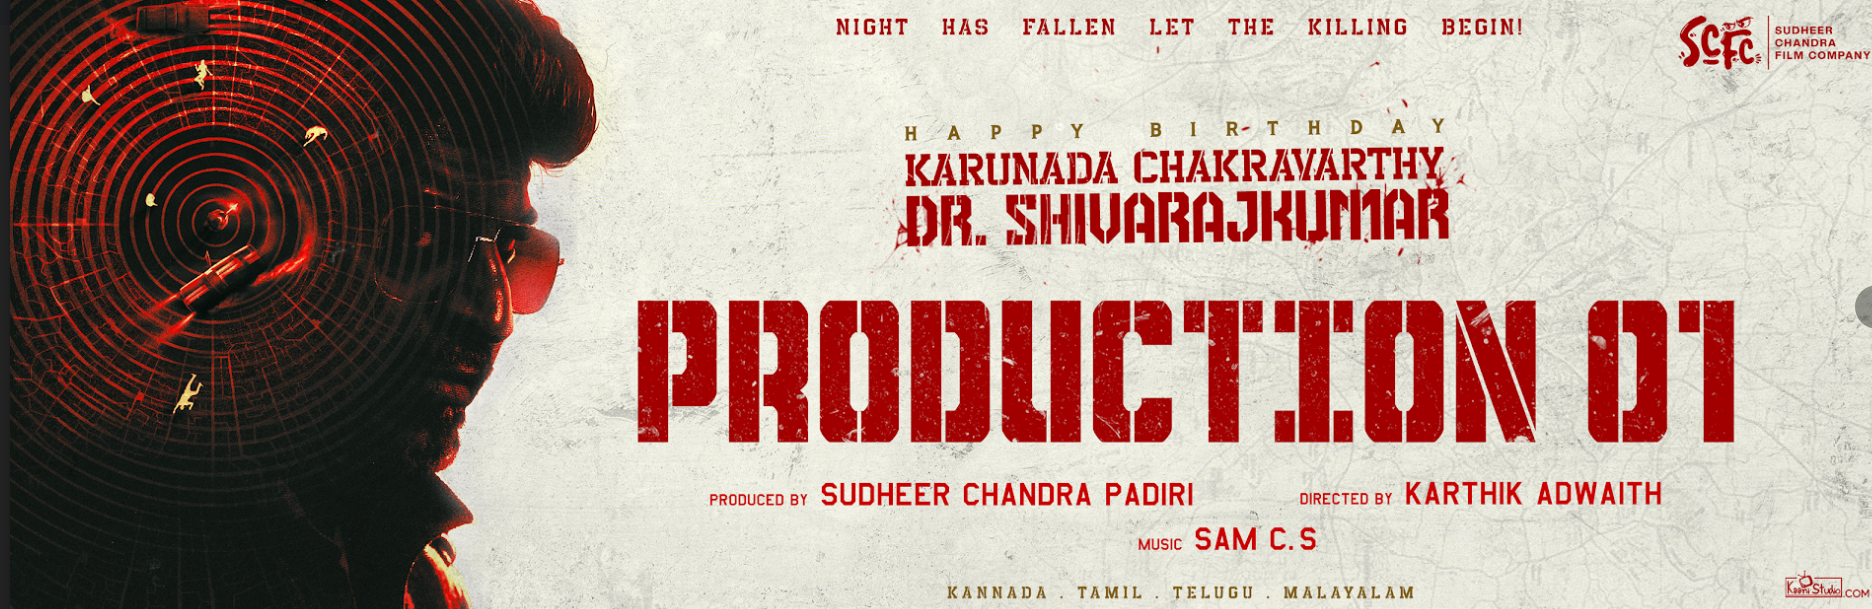 சுதீர் சந்திர பாதிரியின் புதிய திரைப்படம் 'சிவண்ணா எஸ்சிஎஃப்சி01' (#ShivannaSCFC01) பான் இந்தியா படமாக உருவாகிறது